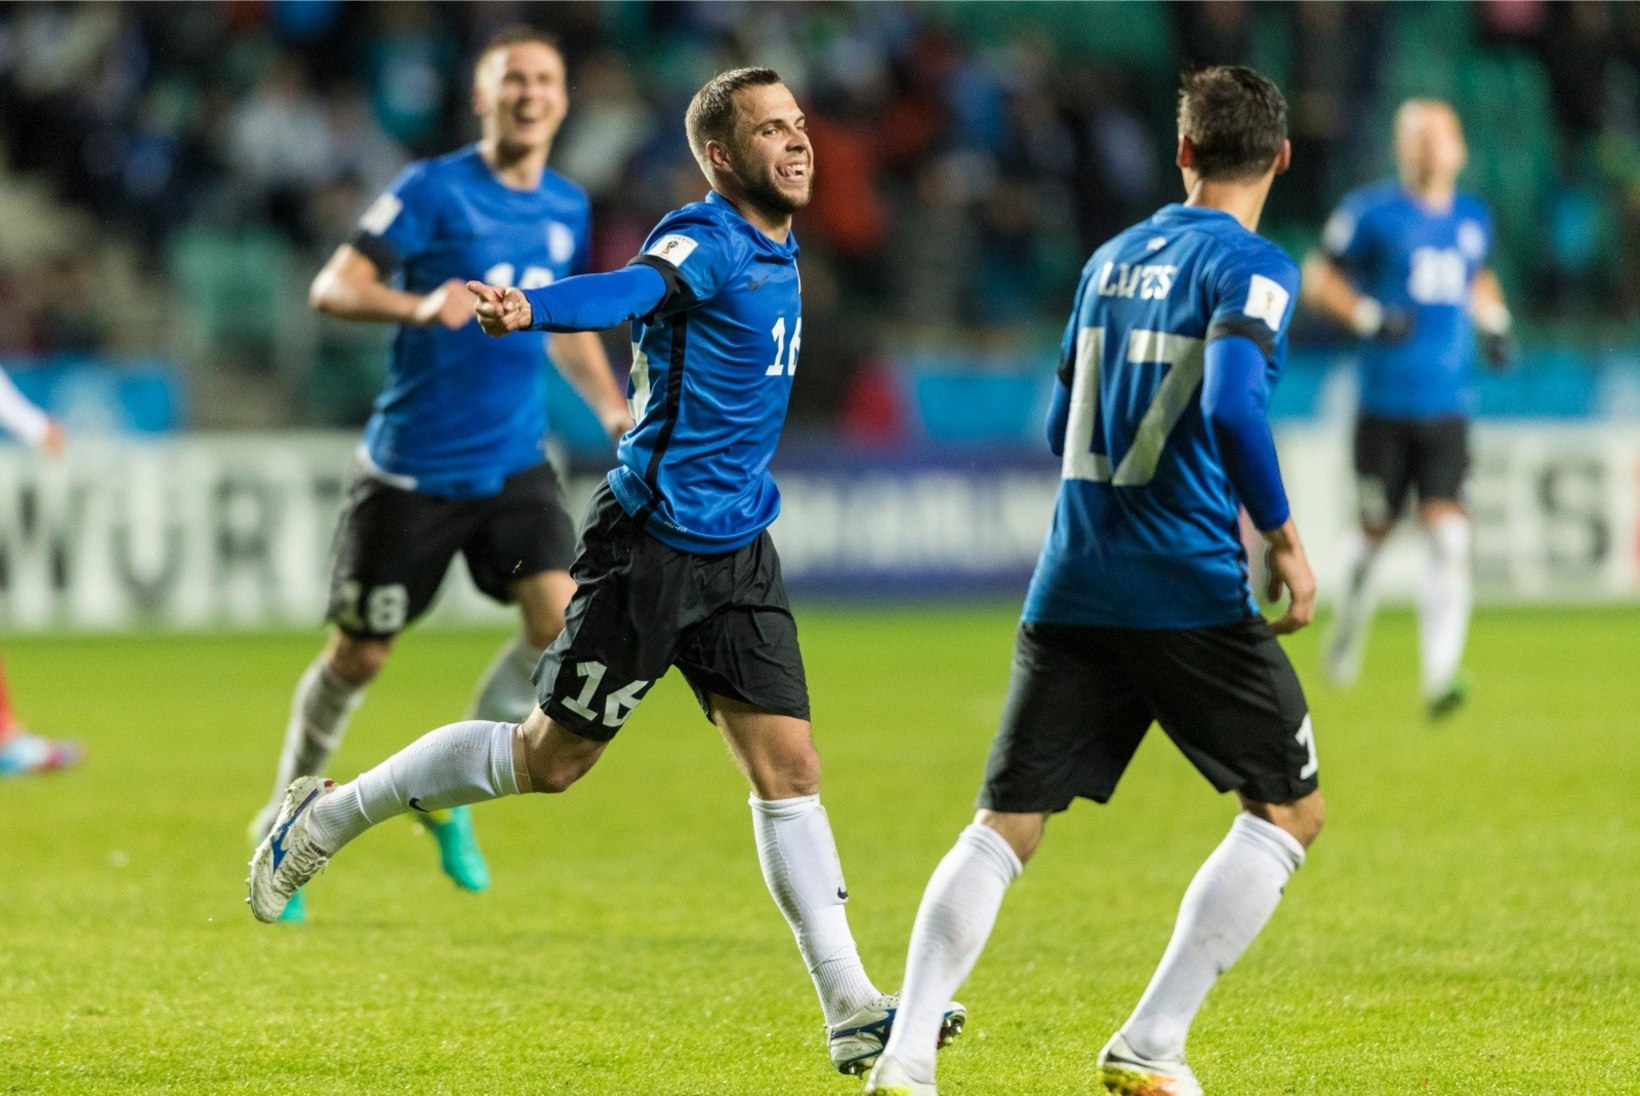 NII SEE JUHTUS | Sport 7.10: Eesti võitis Joonas Tamme kübaratriki toel Gibraltari 6:0